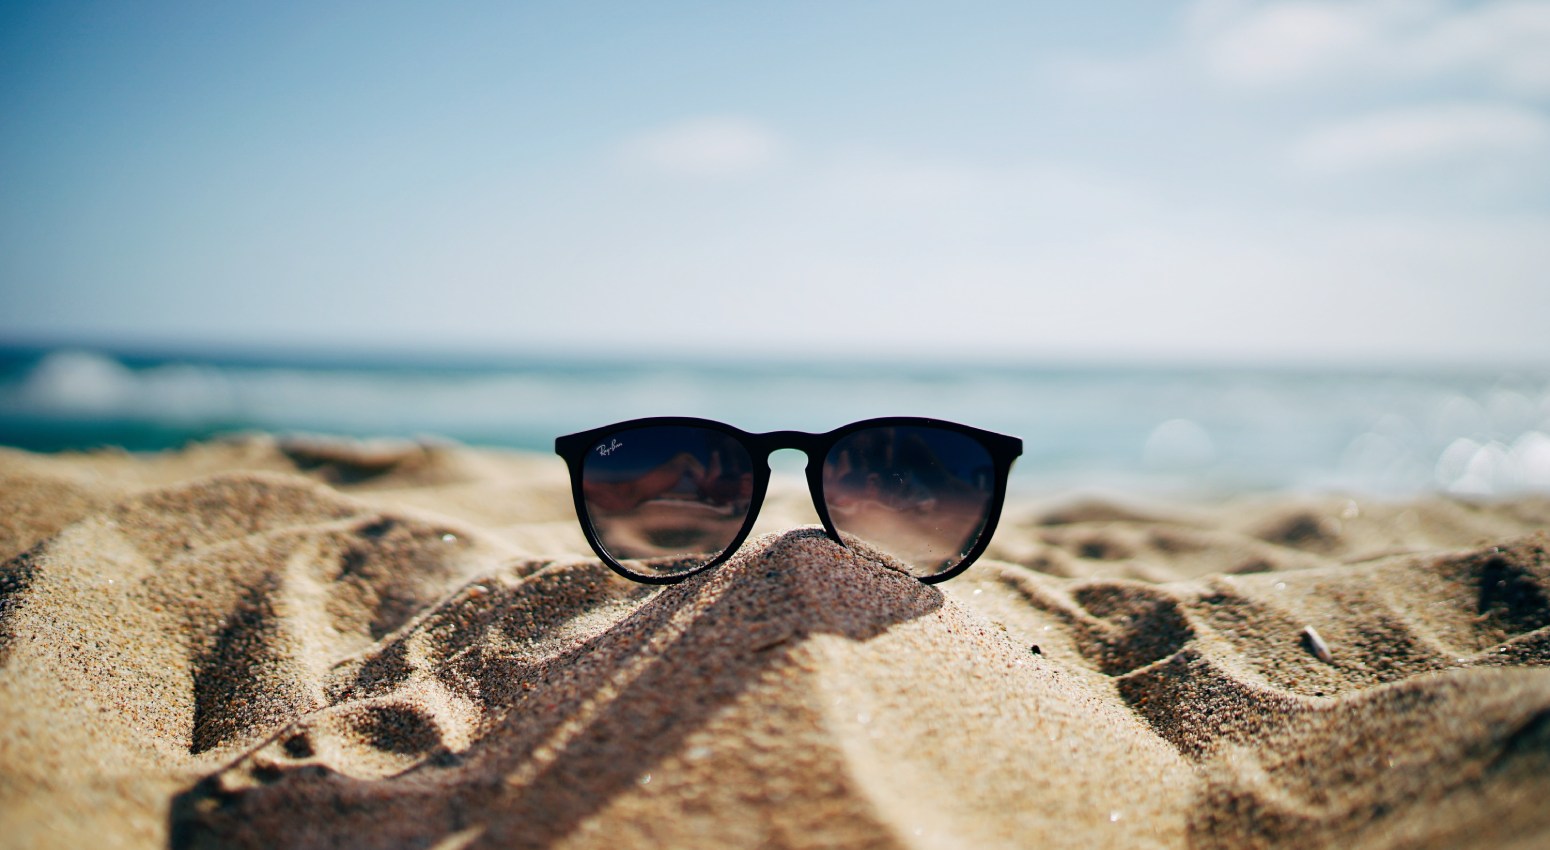 Sunglasses on a sandy beach.